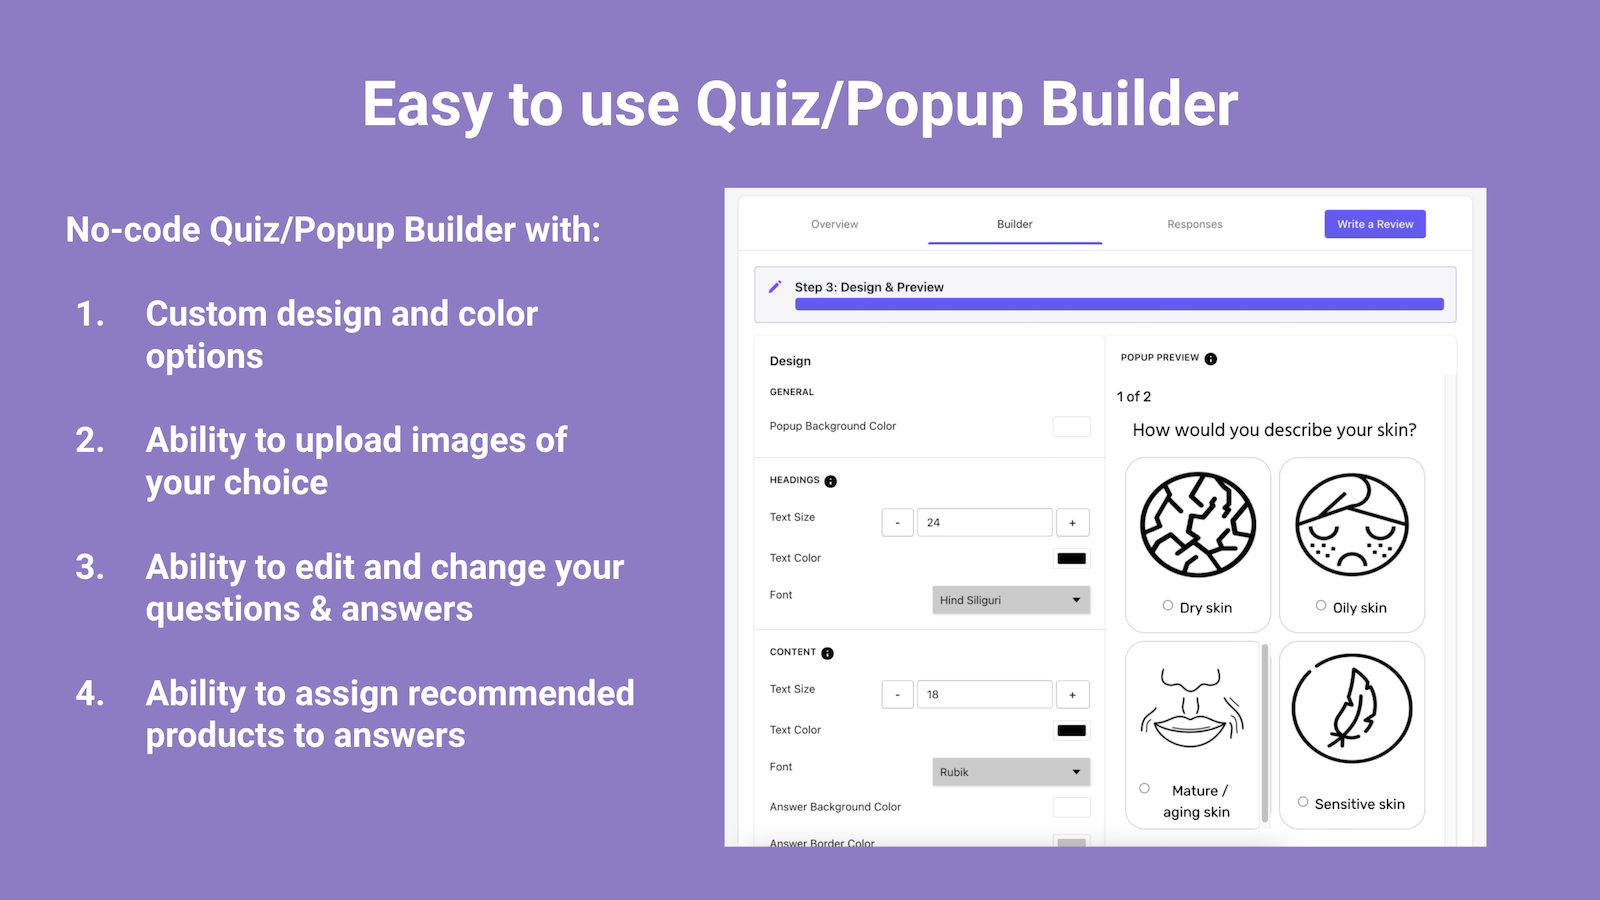 No-code Quiz/Popup Builder